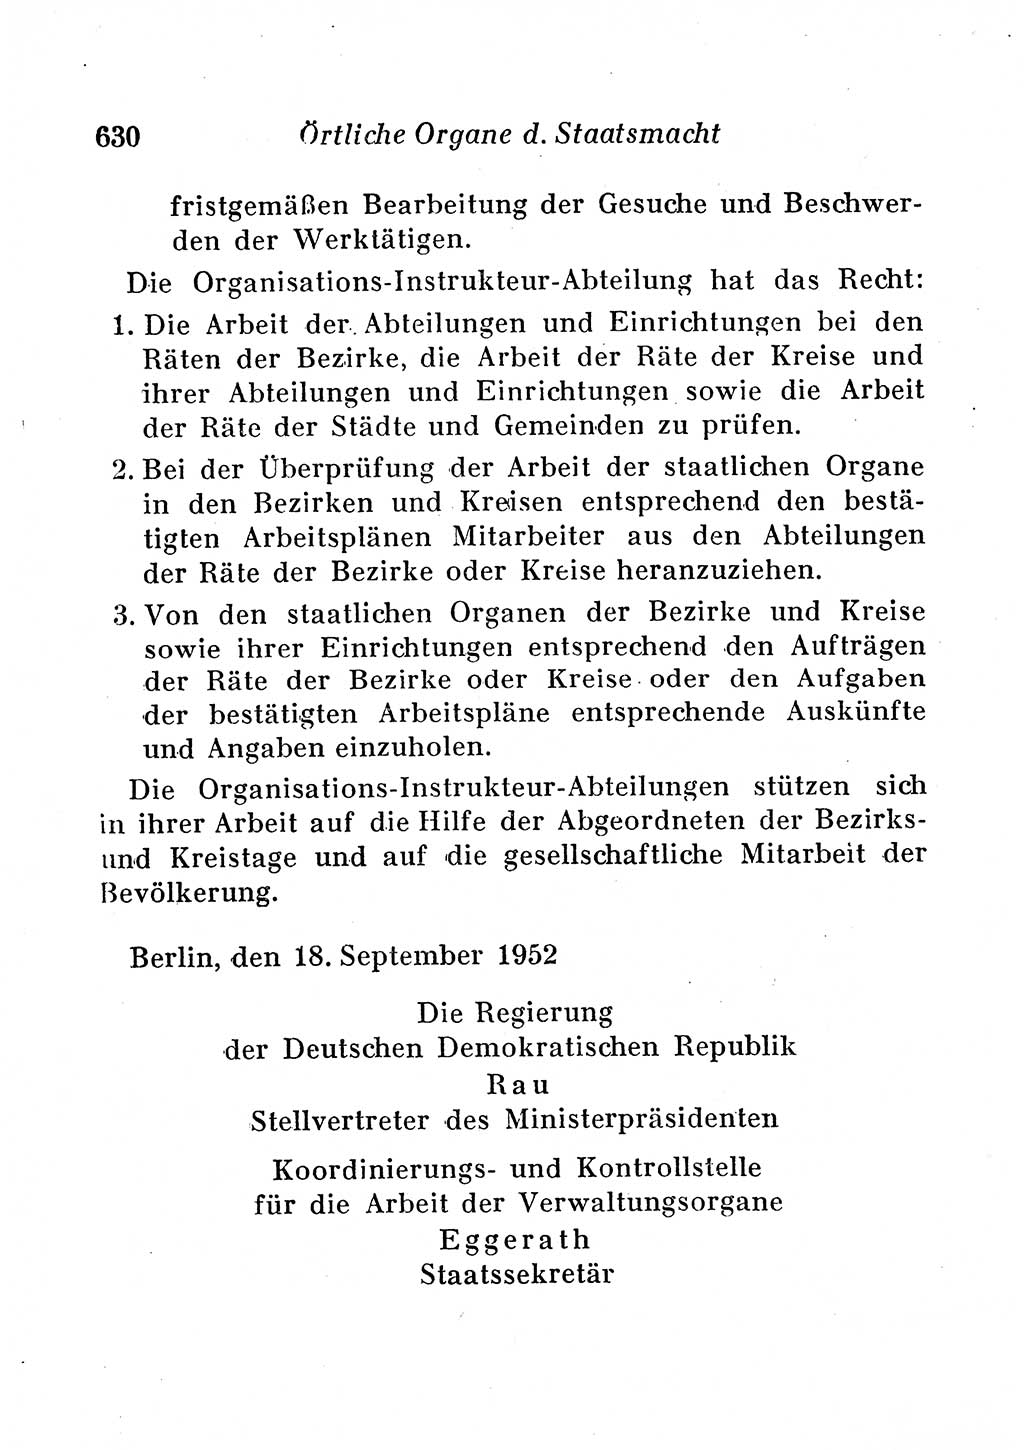 Staats- und verwaltungsrechtliche Gesetze der Deutschen Demokratischen Republik (DDR) 1958, Seite 630 (StVerwR Ges. DDR 1958, S. 630)